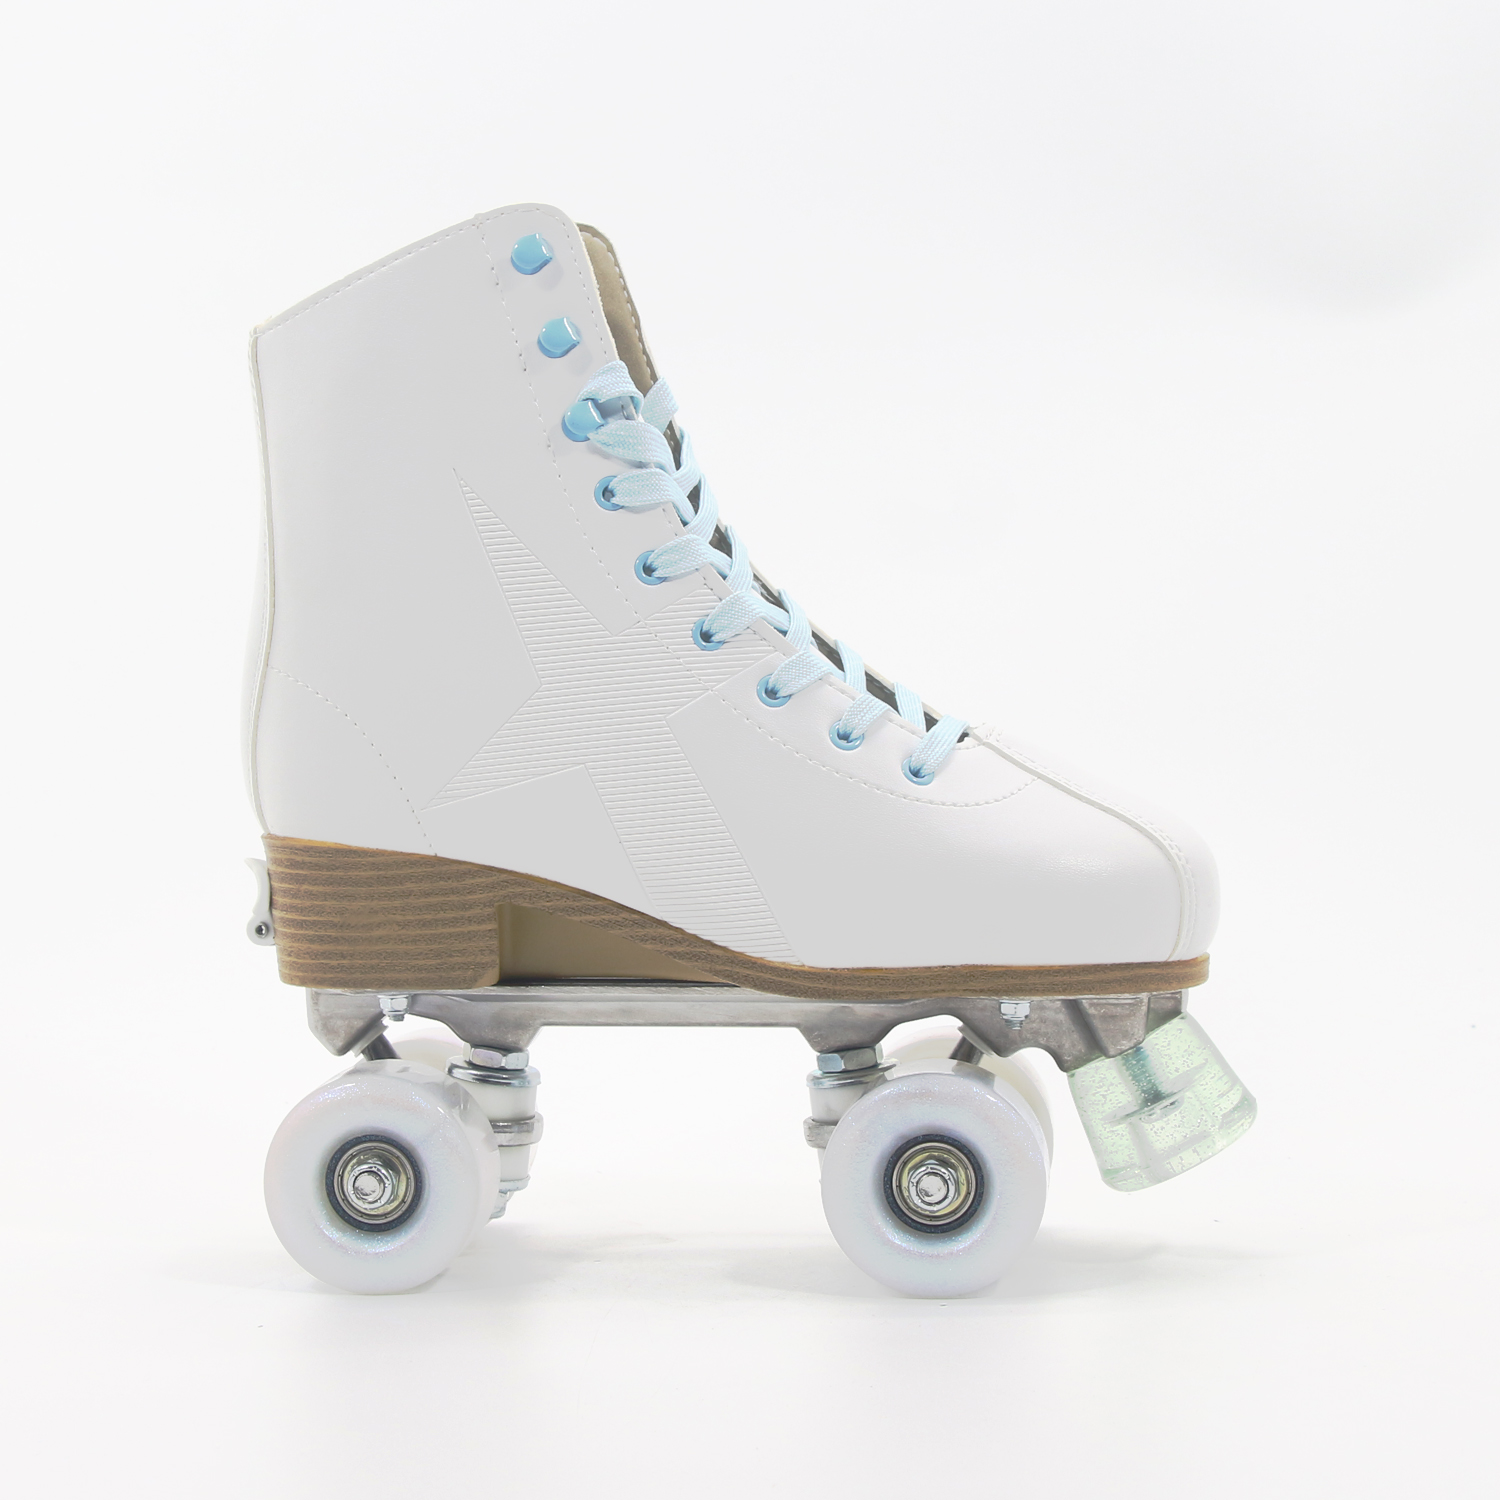 Traditioneller einstellbarer Quad Roller Skate weiße Farbe